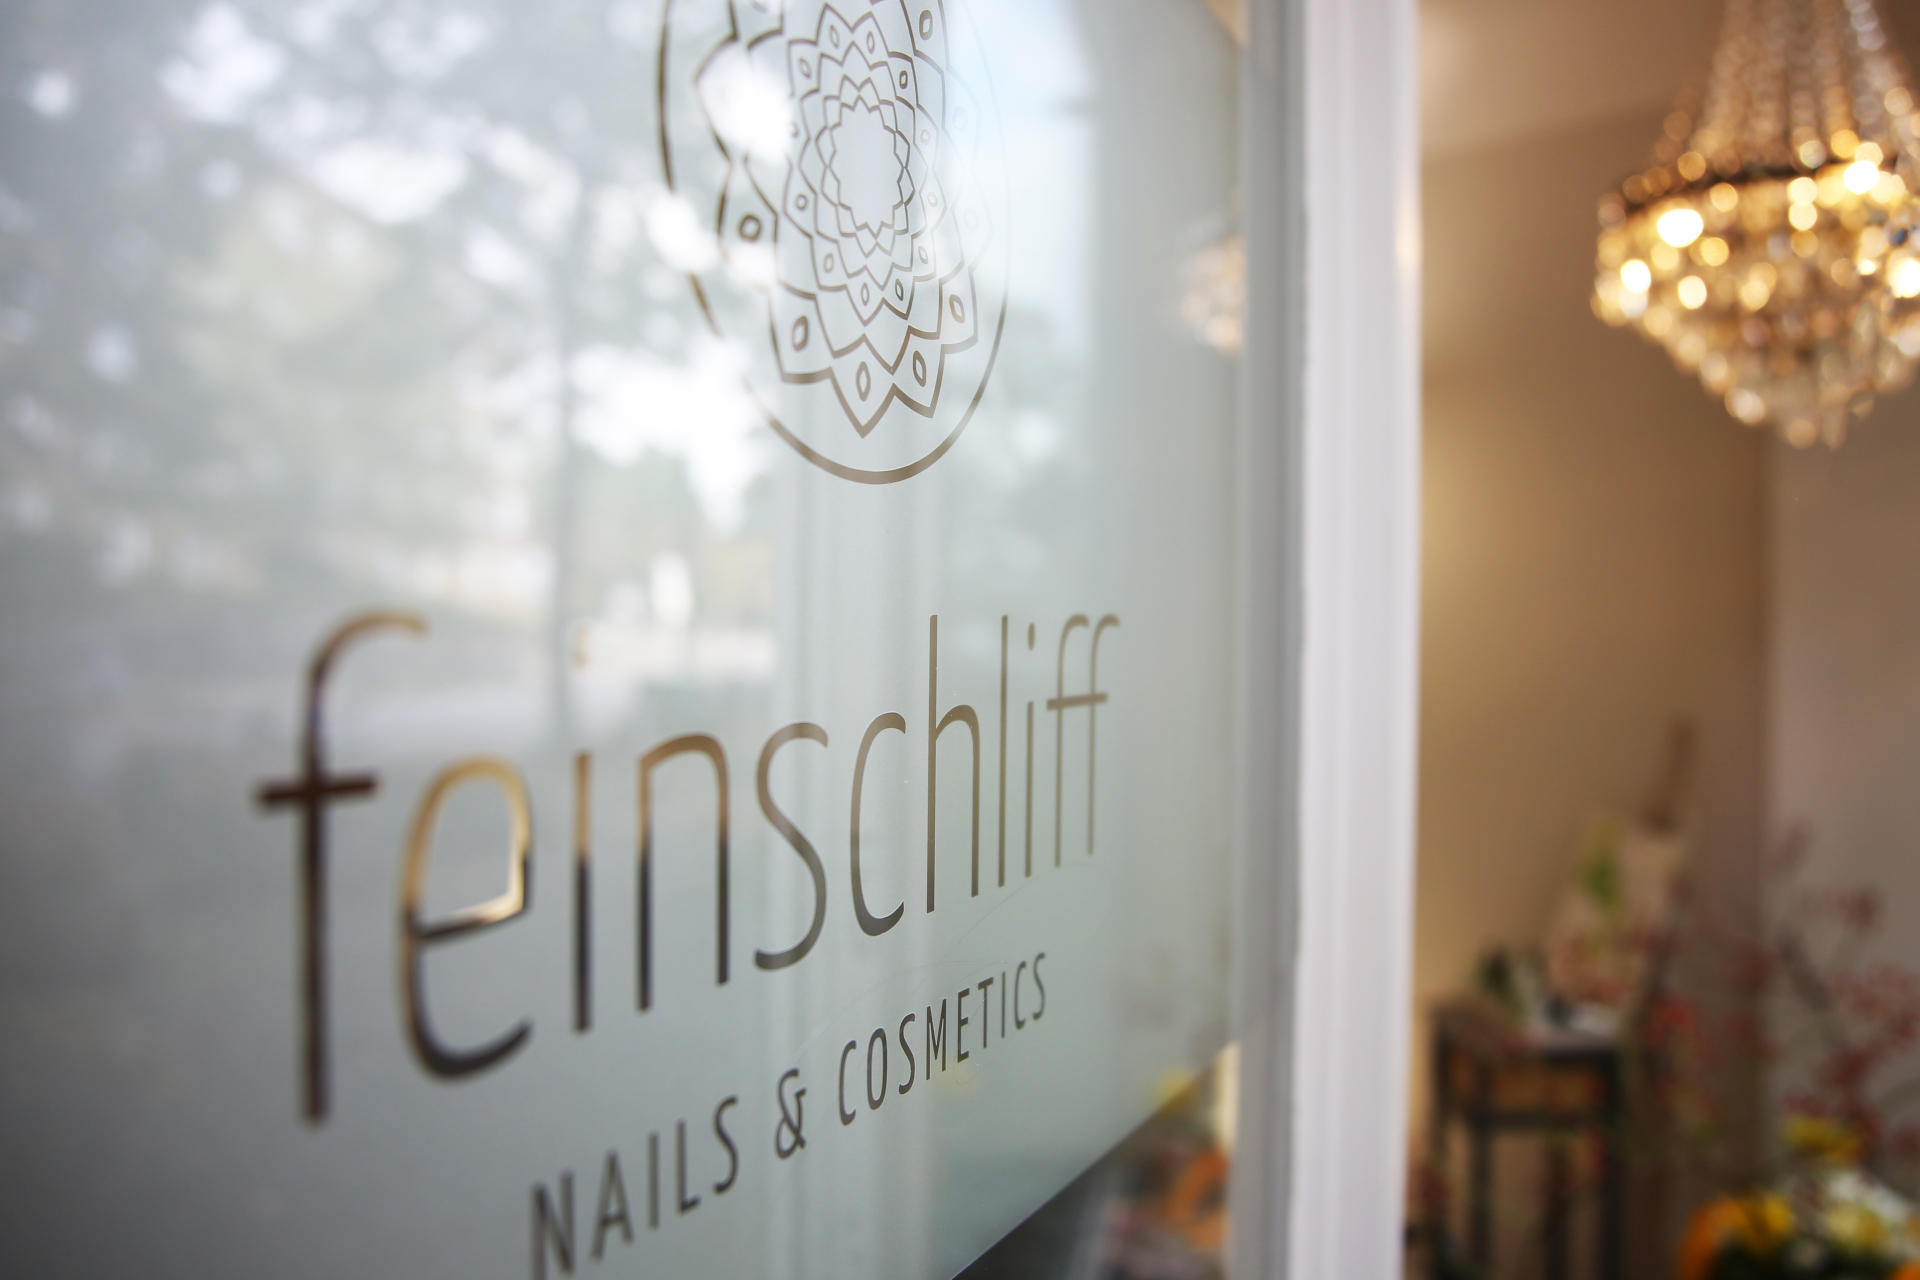 Feinschliff Nails & Cosmetics, Alsterdorfer Straße 119 in Hamburg